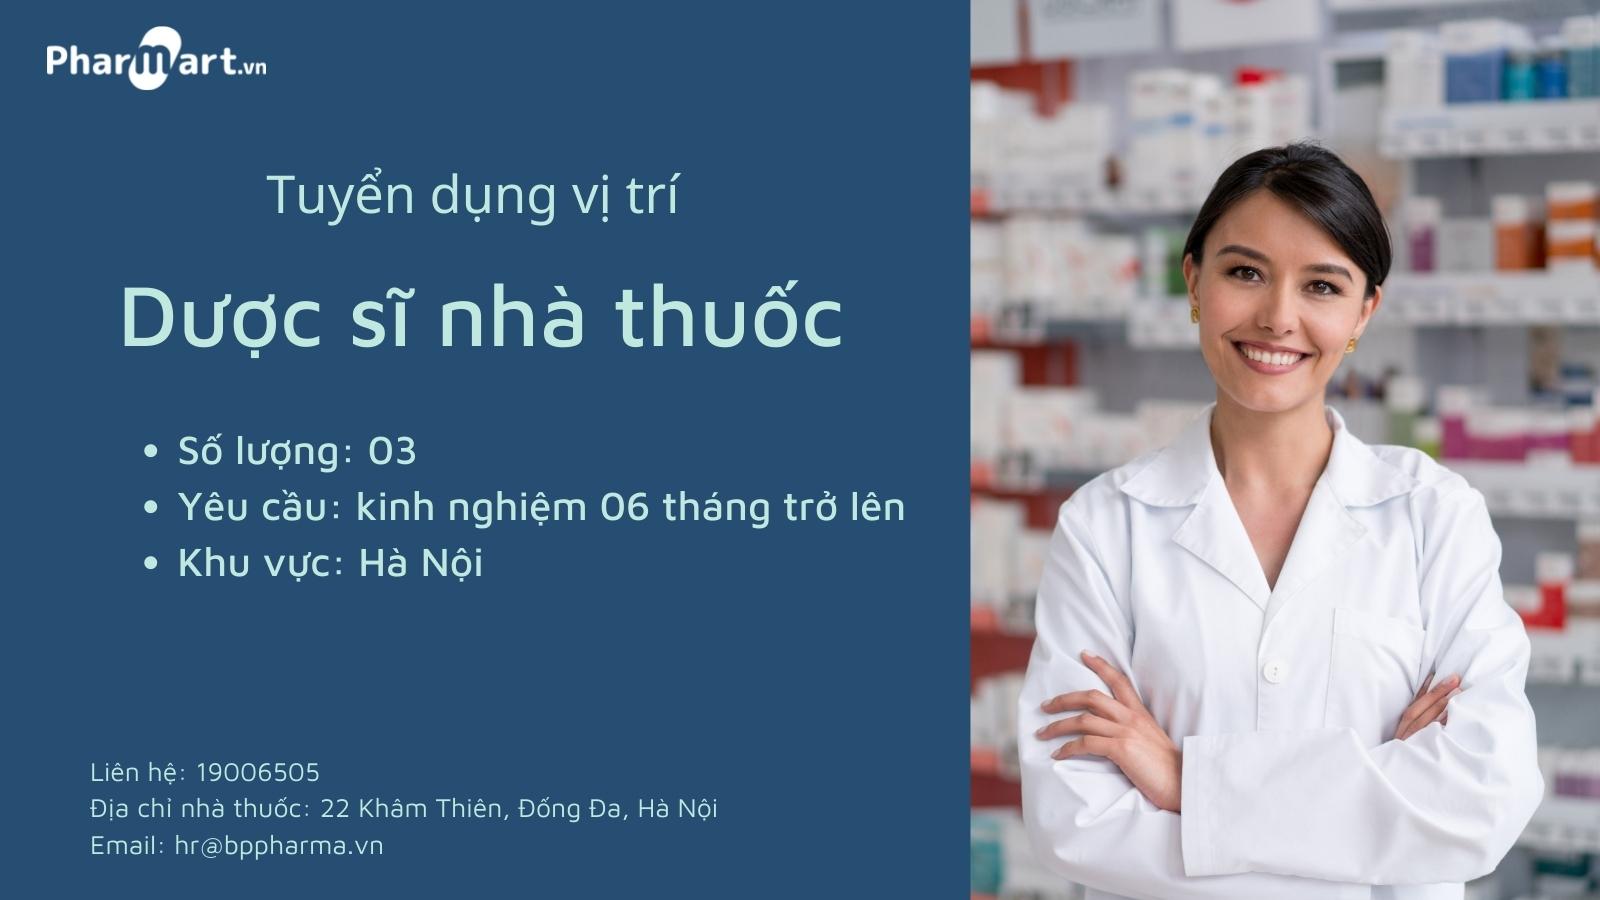 [HÀ NỘI] - Pharmart.vn tuyển dụng vị trí Dược sĩ nhà thuốc